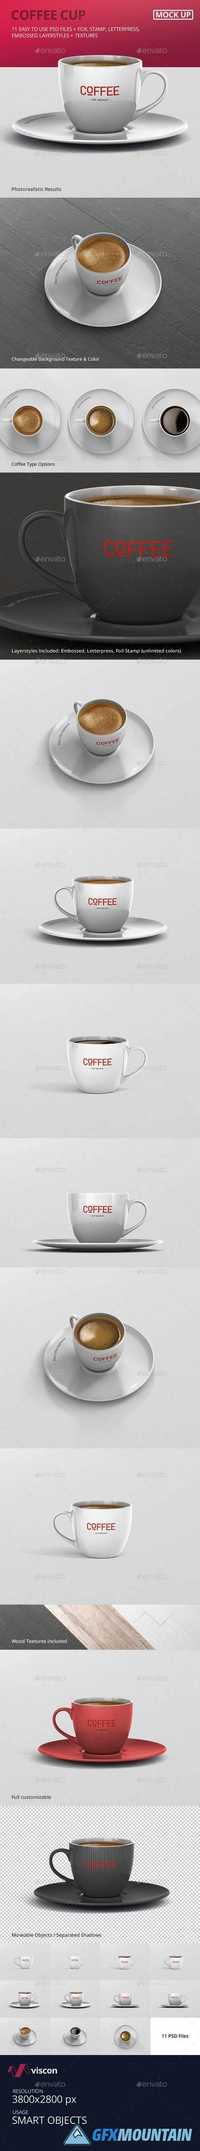 Coffee Cup Mockup 19521557